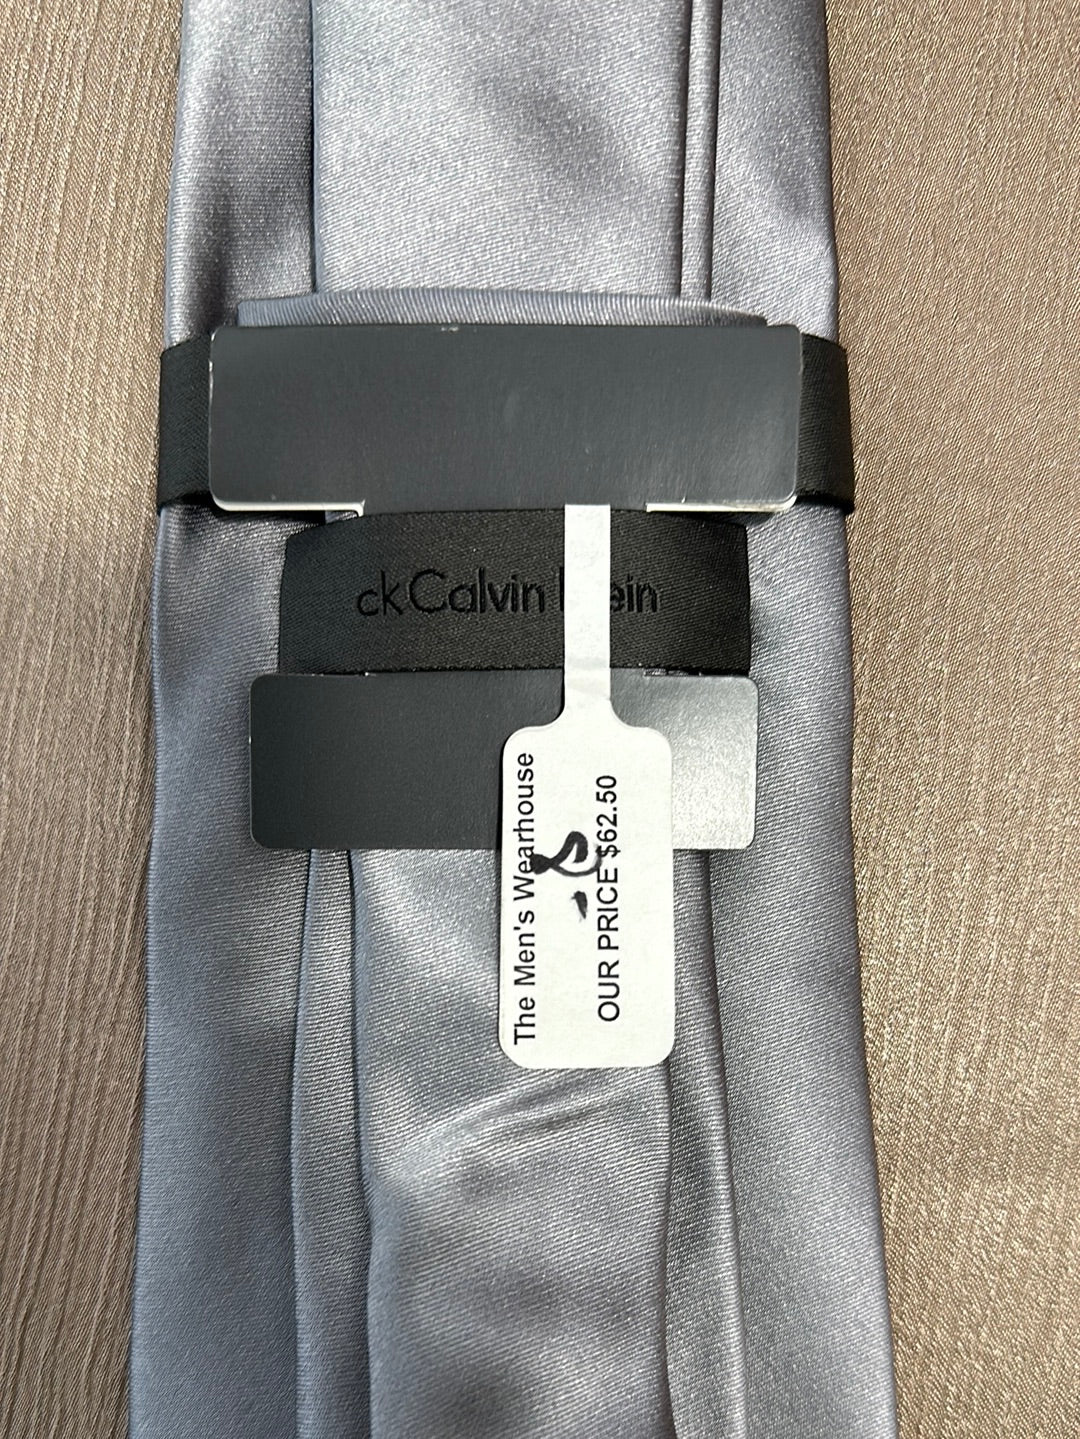 NWT - CALVIN KLEIN silver gray 100% Silk Extra Long Necktie -4" x 63"